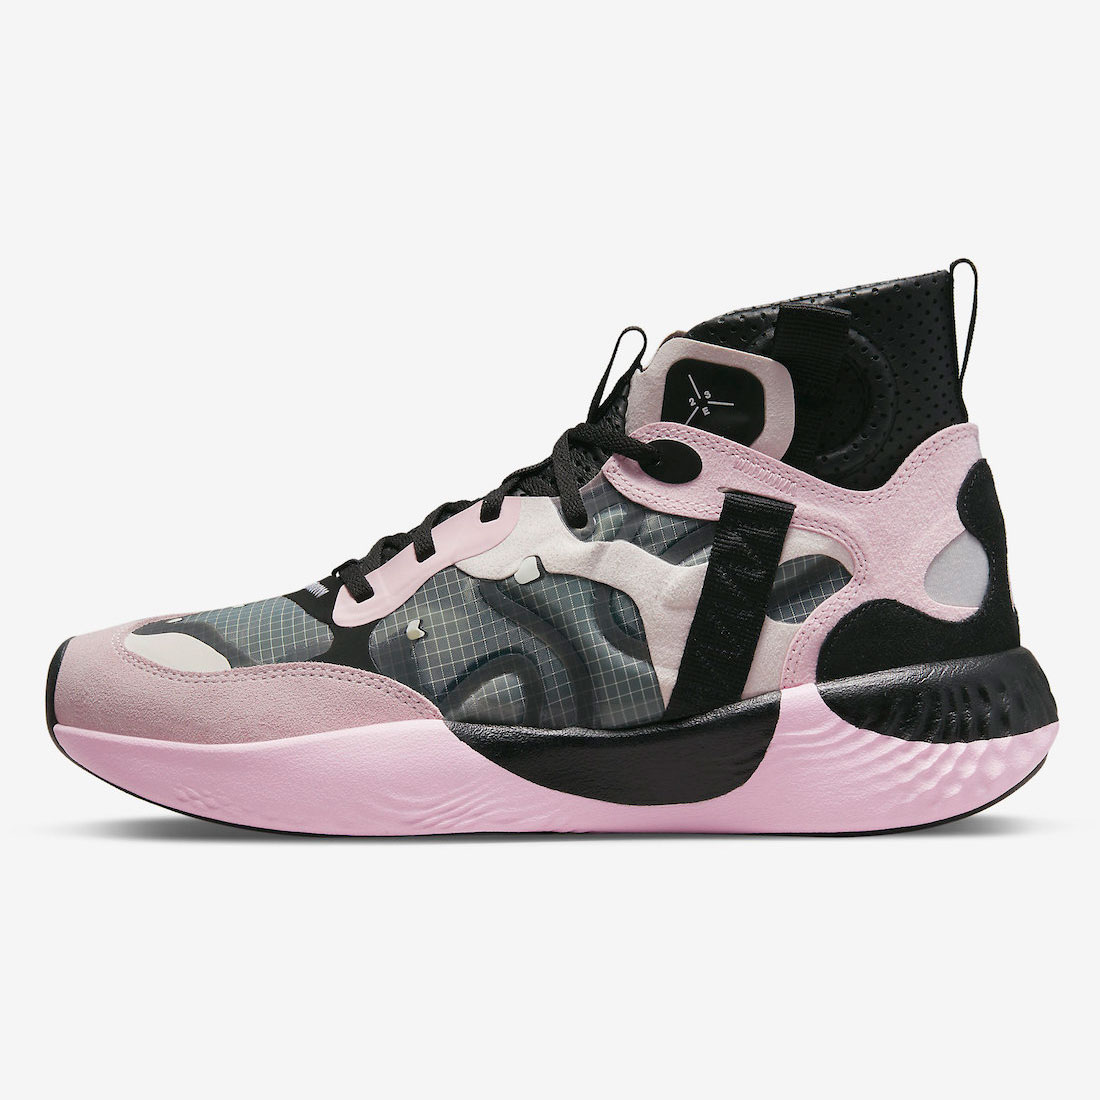 Jordan Delta 3 “Pink Foam” VDD9361-601